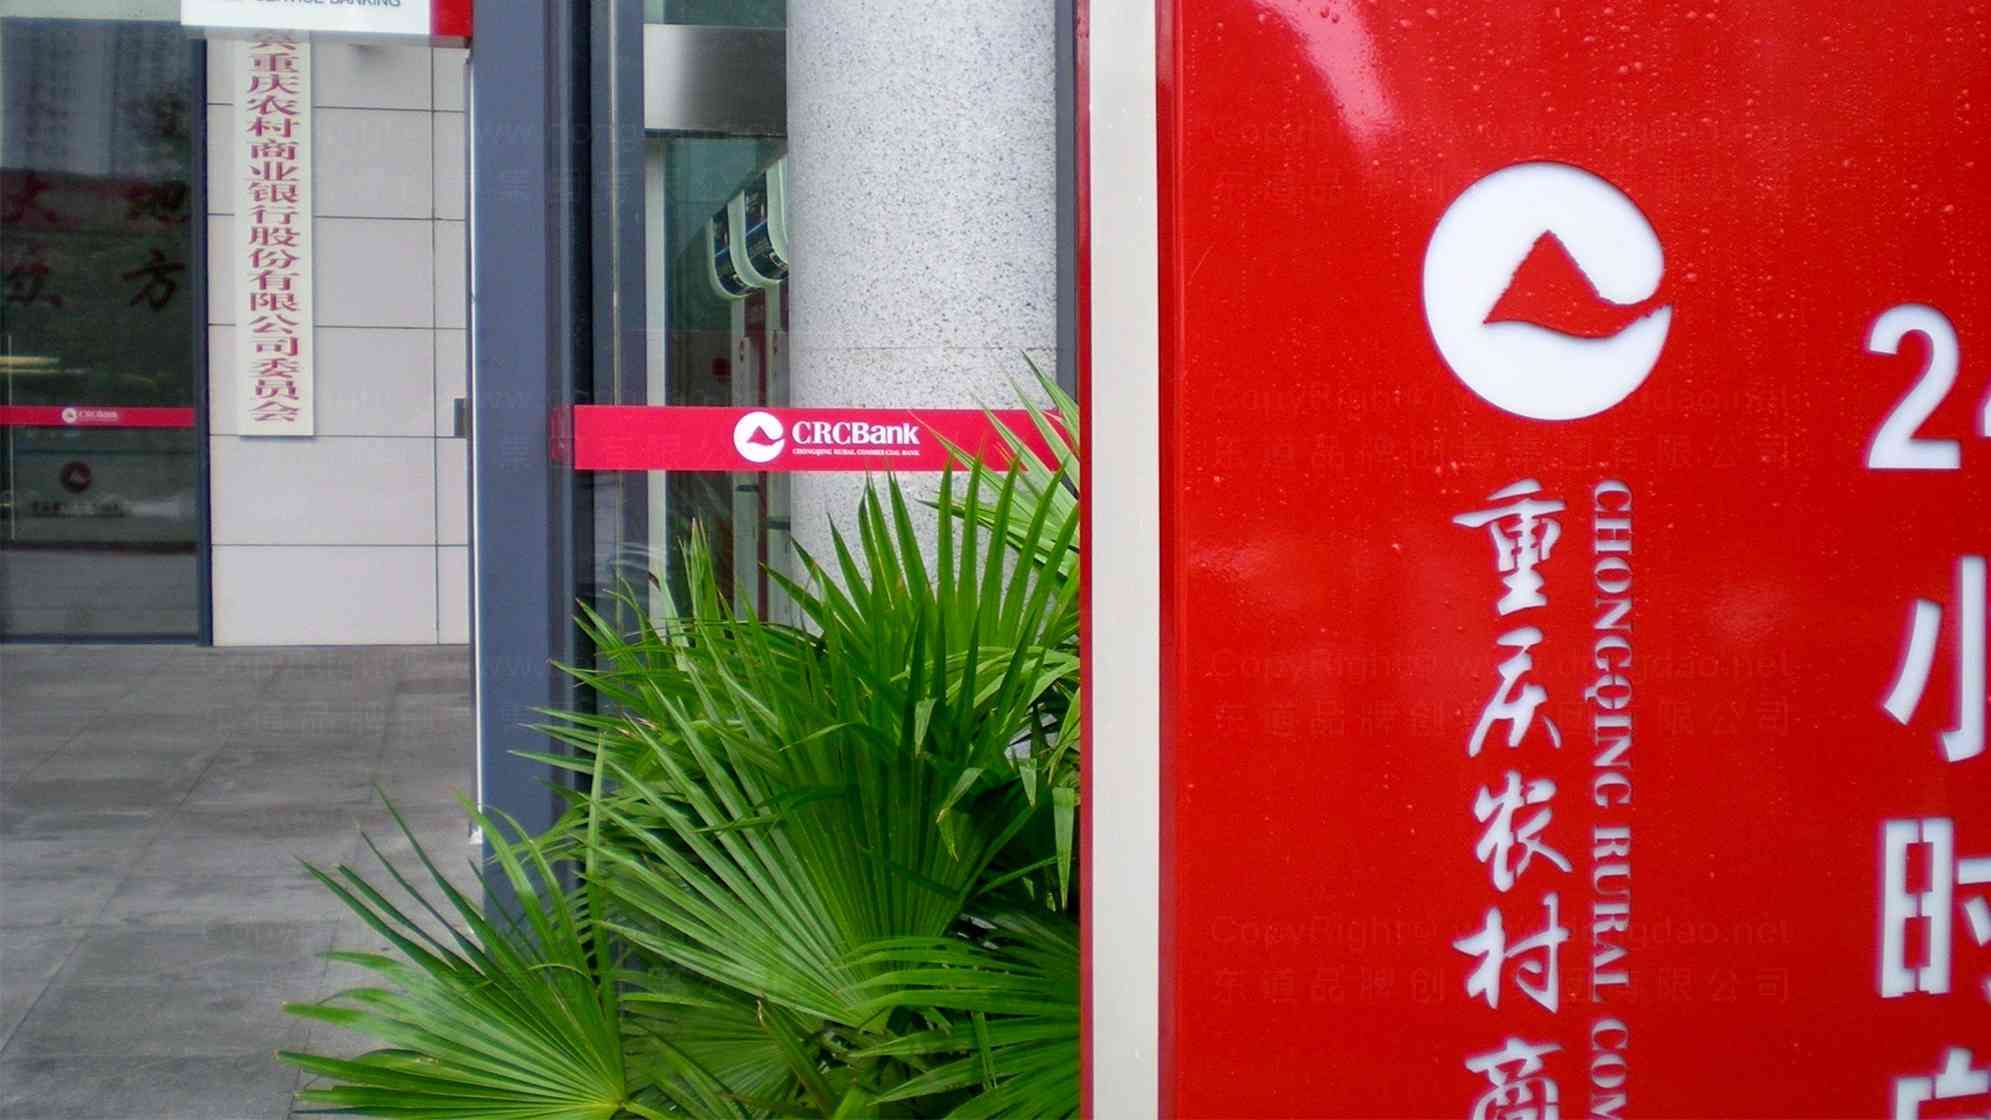 重庆农村商业银行品牌logo设计图片素材_5